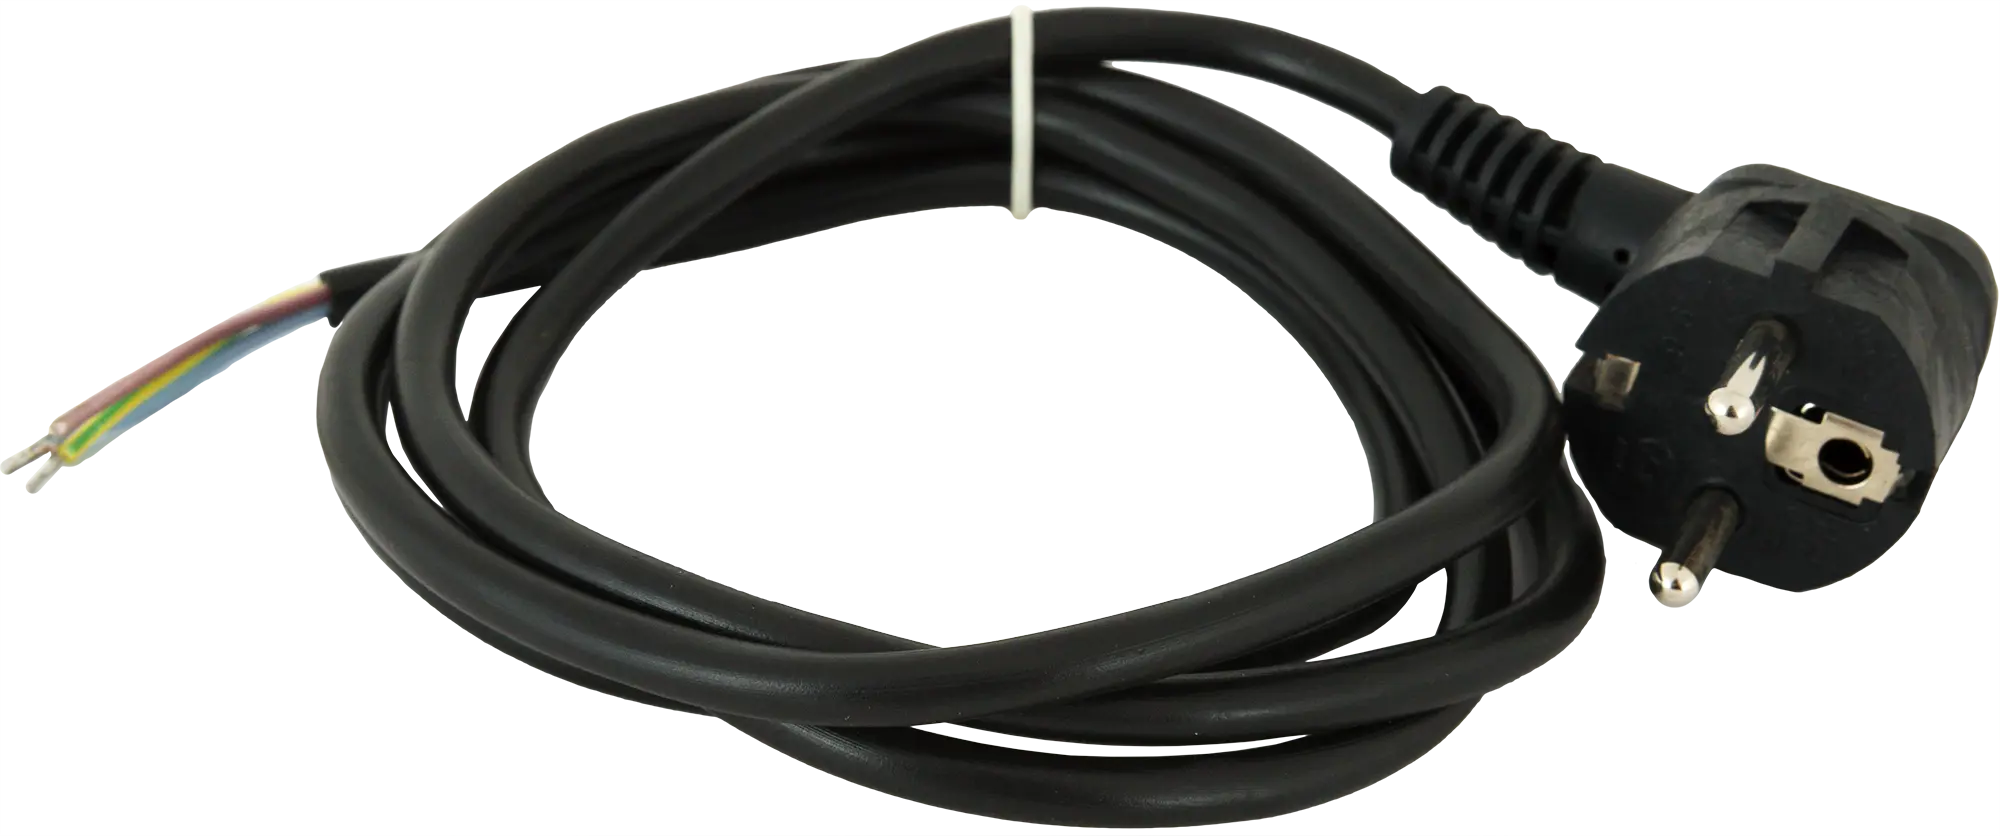 Шнур сетевой с заземлением 16 A 1.5 м цвет чёрный шнур сетевой с диммером чёрный 2 м